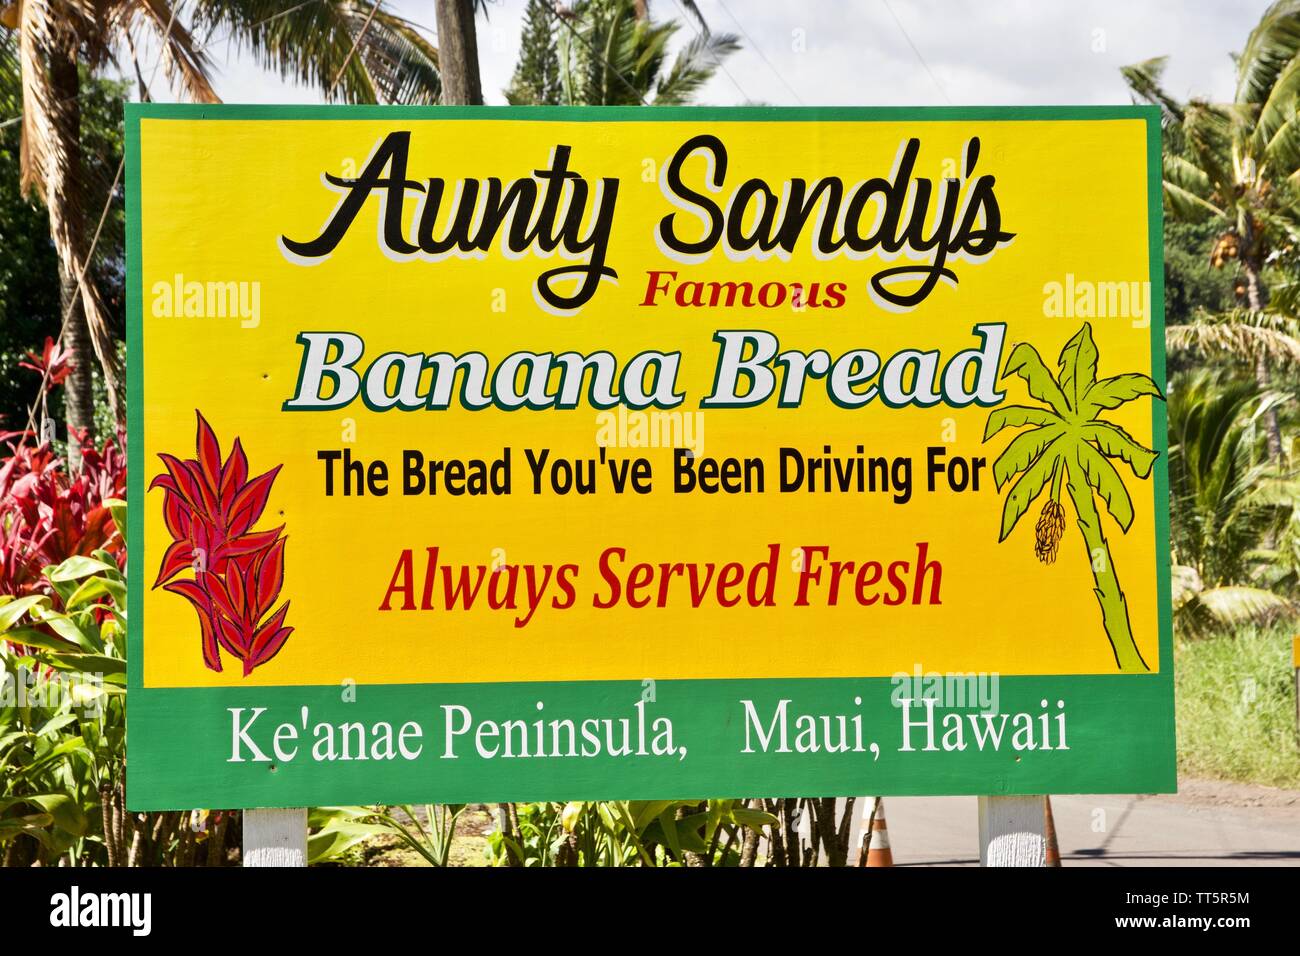 Maui Banana Bread Company